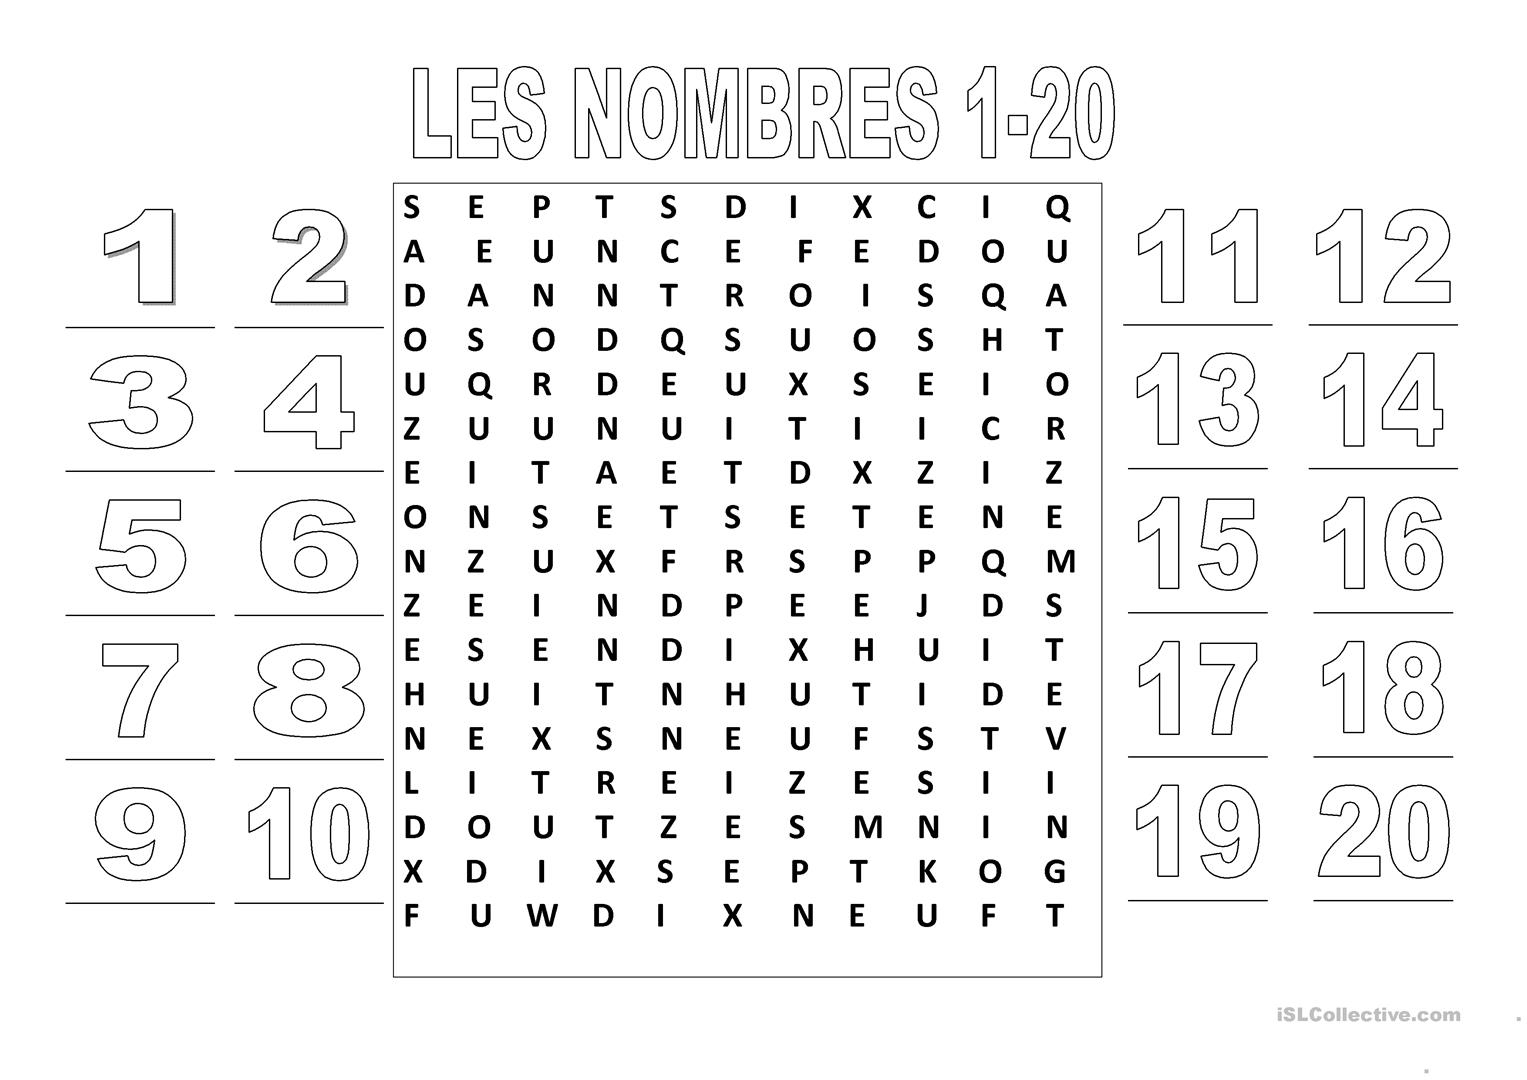 Les Nombres 1-20 (Mots Croisés) - Français Fle Fiches intérieur Mots Croisés Pour Débutants